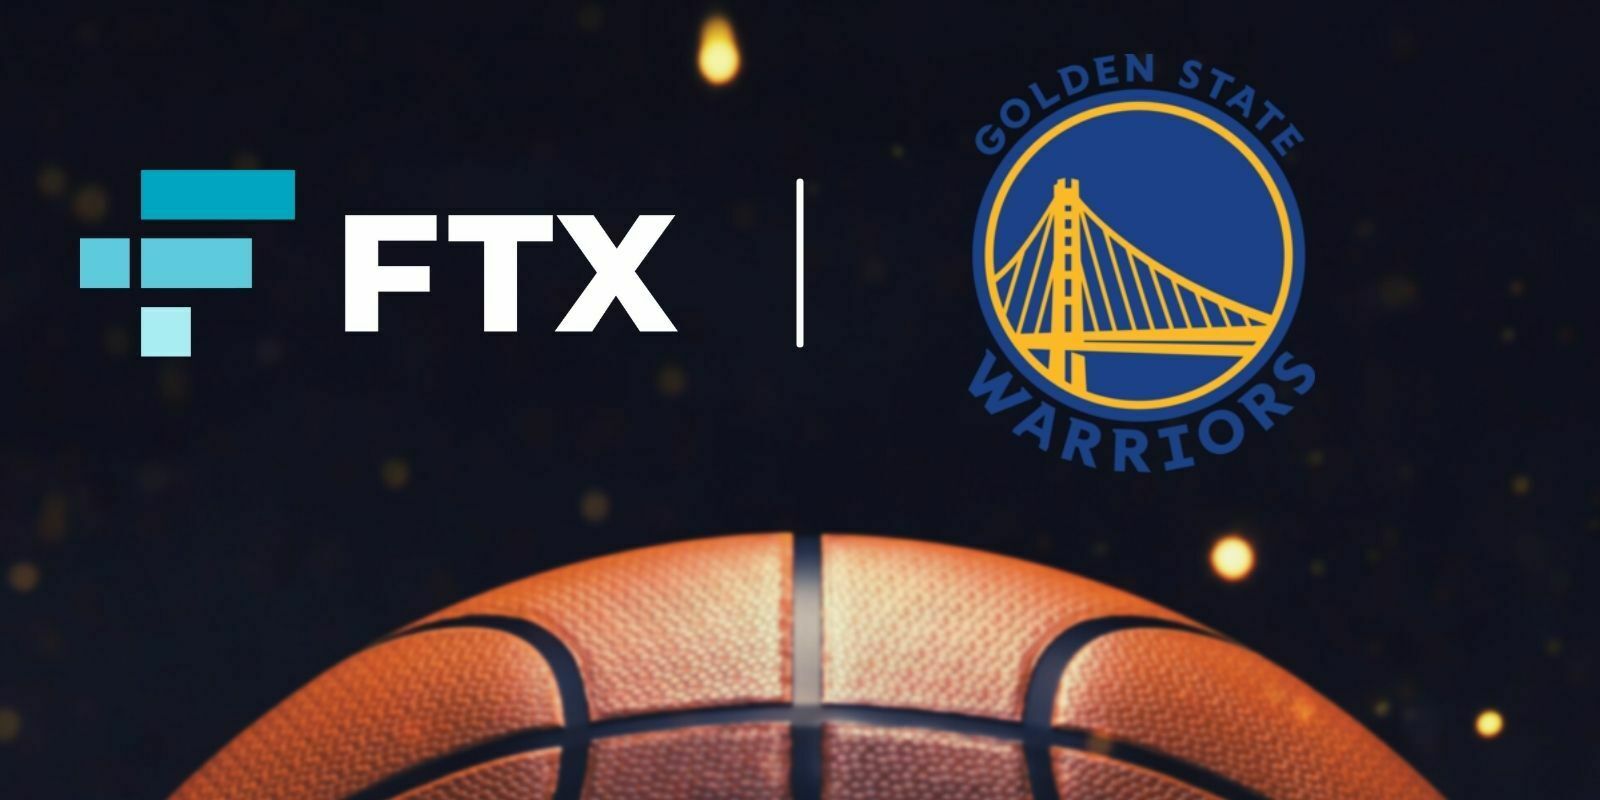 Les Golden State Warriors (NBA) signent un partenariat avec FTX.US